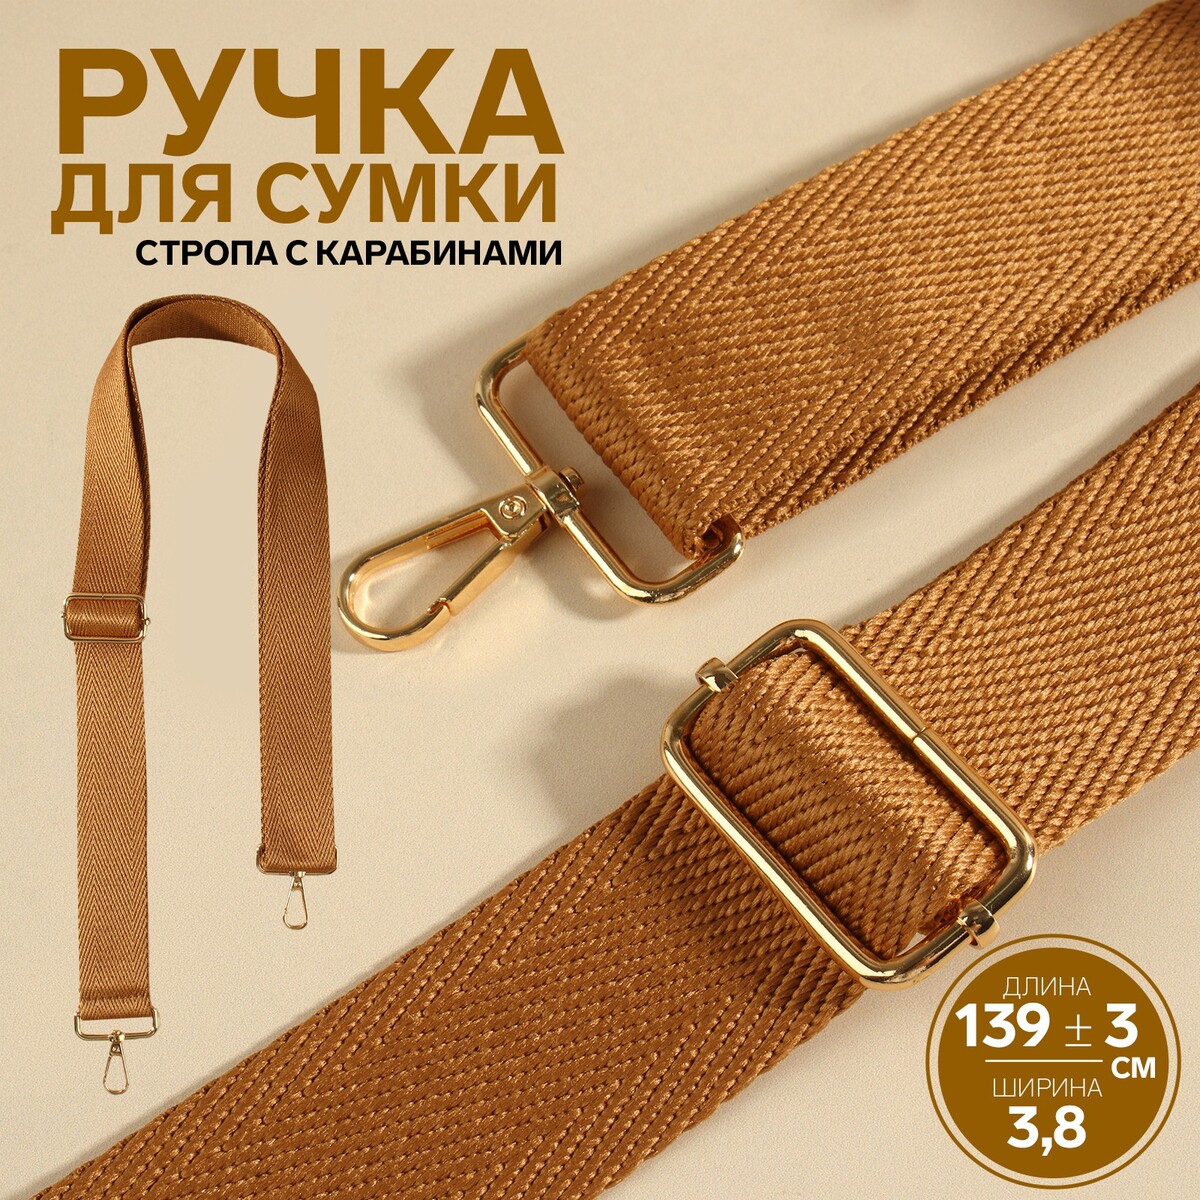 Ручка для сумки, стропа, с карабинами, 139 ± 3 × 3,8 см, цвет светло-коричневый ручка шнурок для сумки с карабинами 120 × 0 6 см коричневый